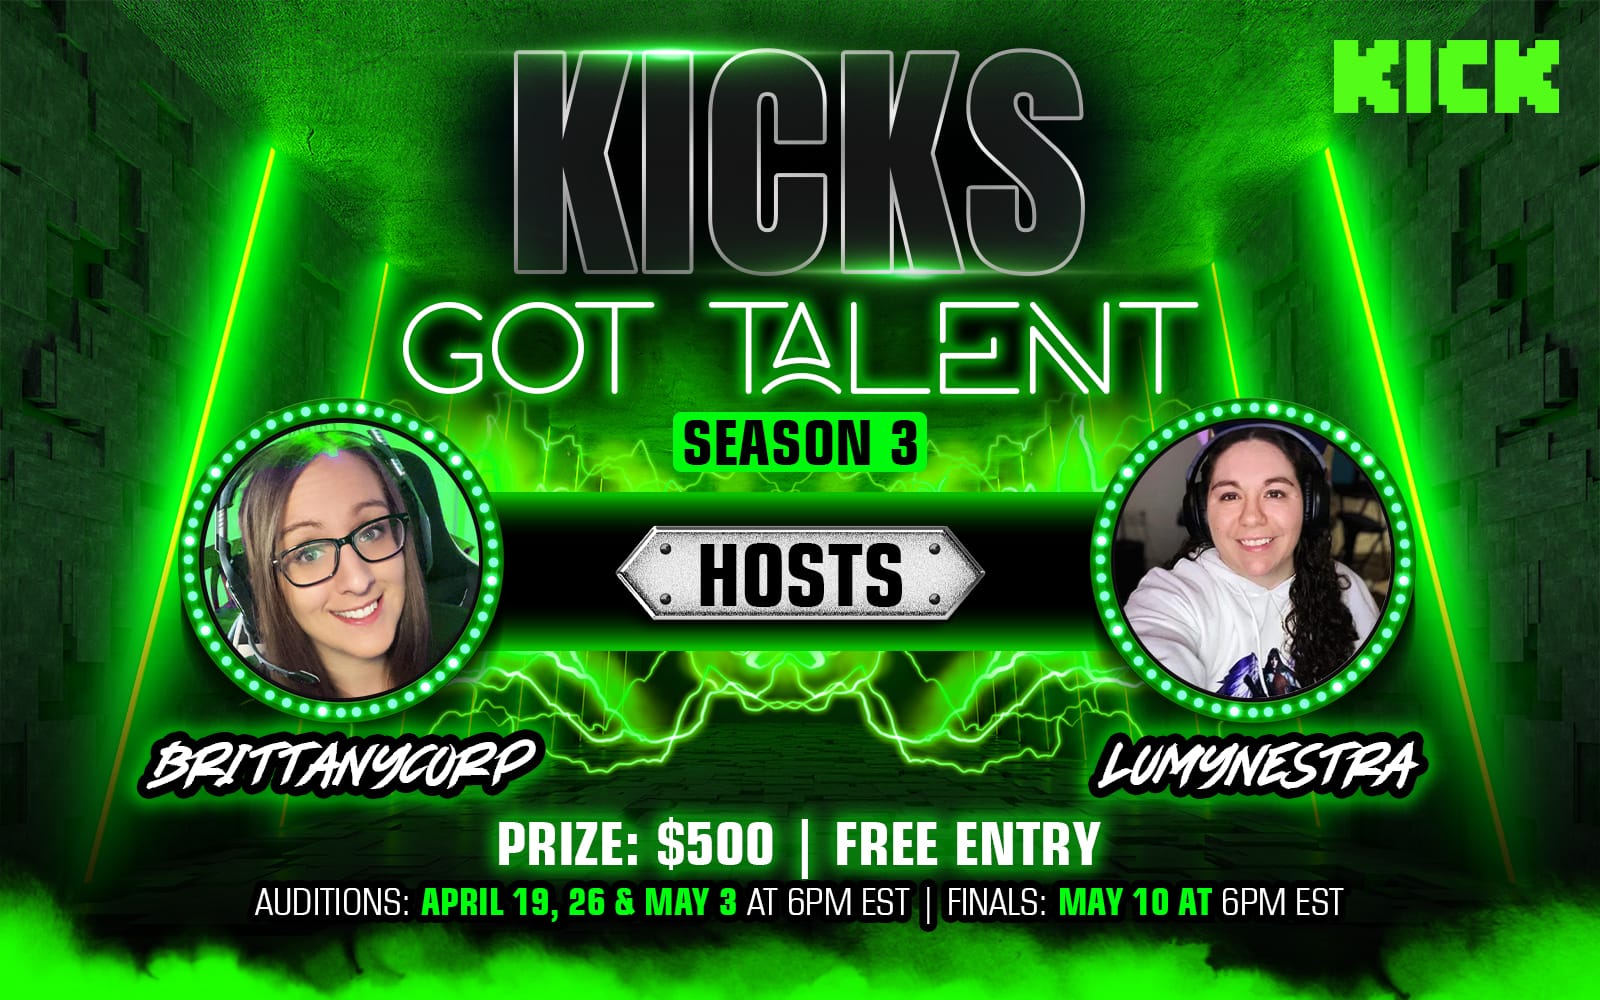 KICKS Got Talent - $500 - Season 3!